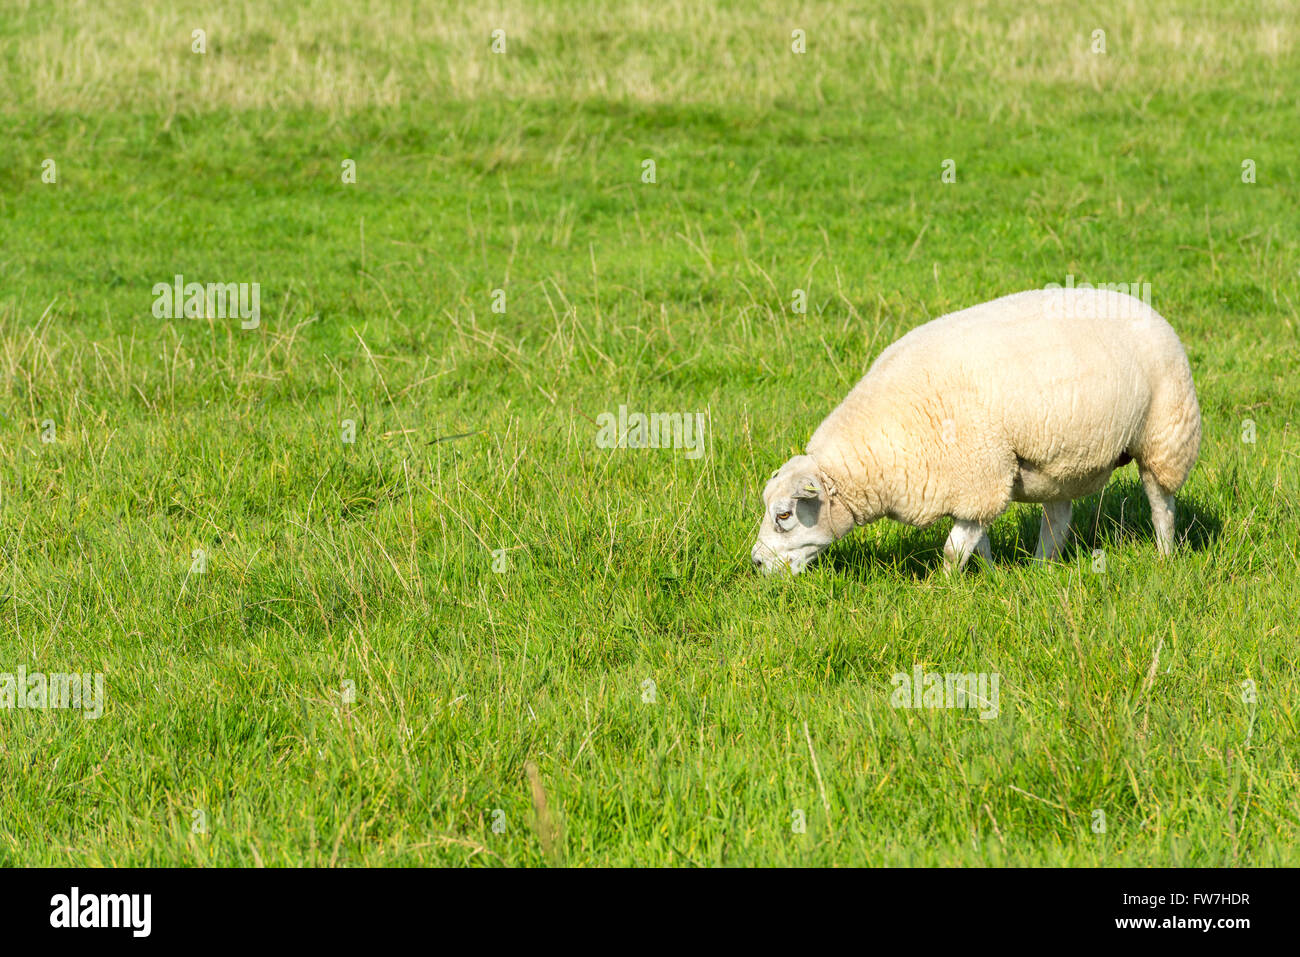 Un mouton blanc mange de l'herbe verte à la ferme Banque D'Images